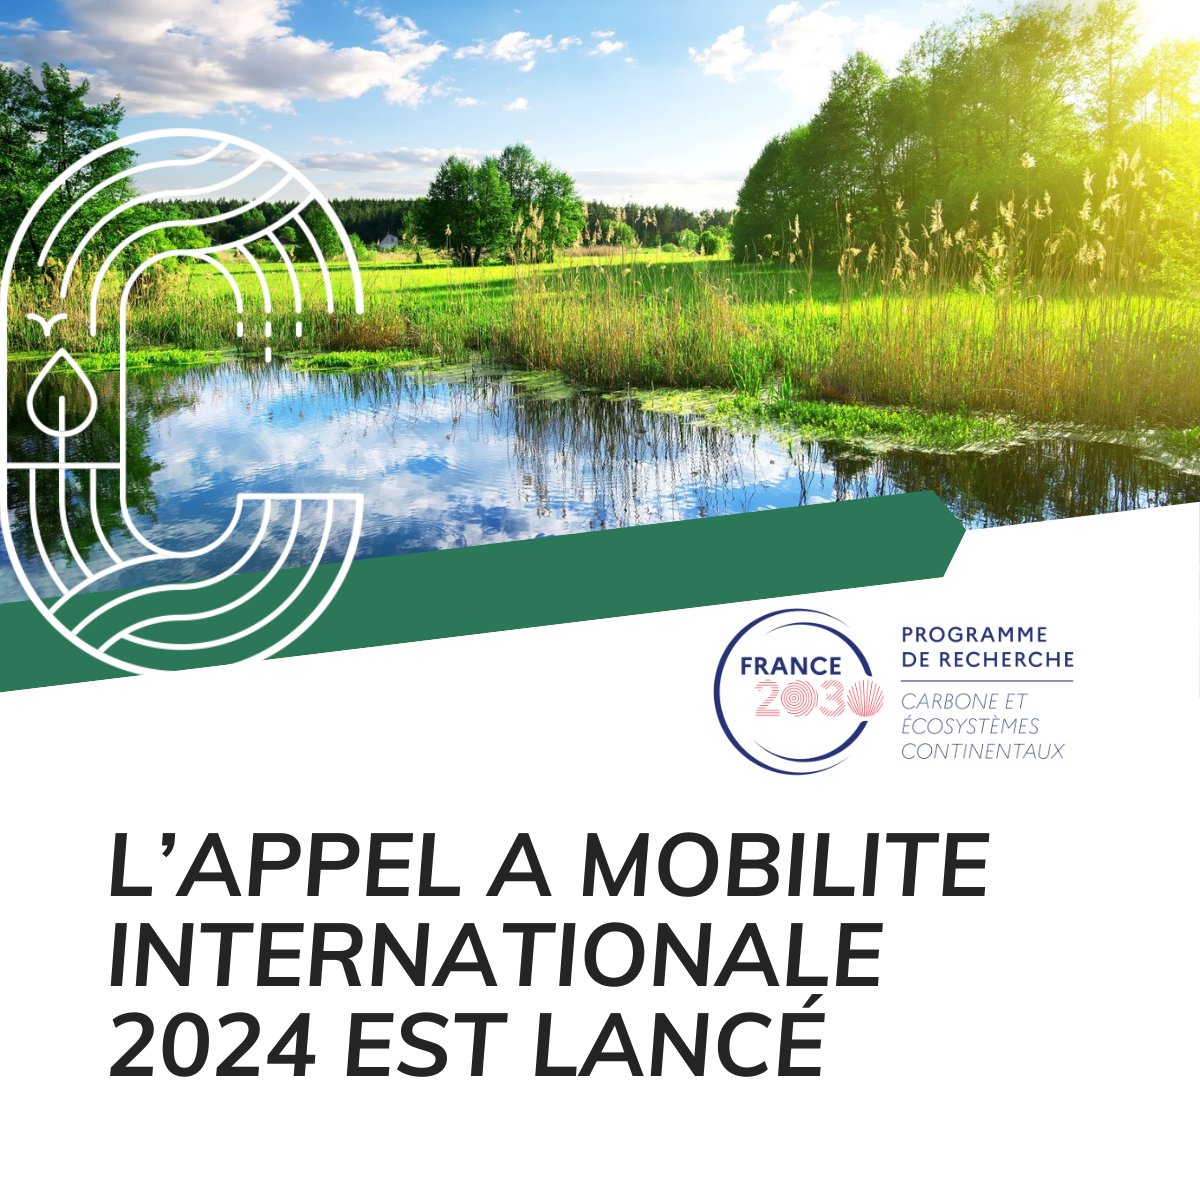 📢 Lancement de notre Appel d'offre Mobilité Internationale ! Déposer votre offre avant le 30 avril 2024 ➡ pepr-faircarbon.fr/appels-a-proje…